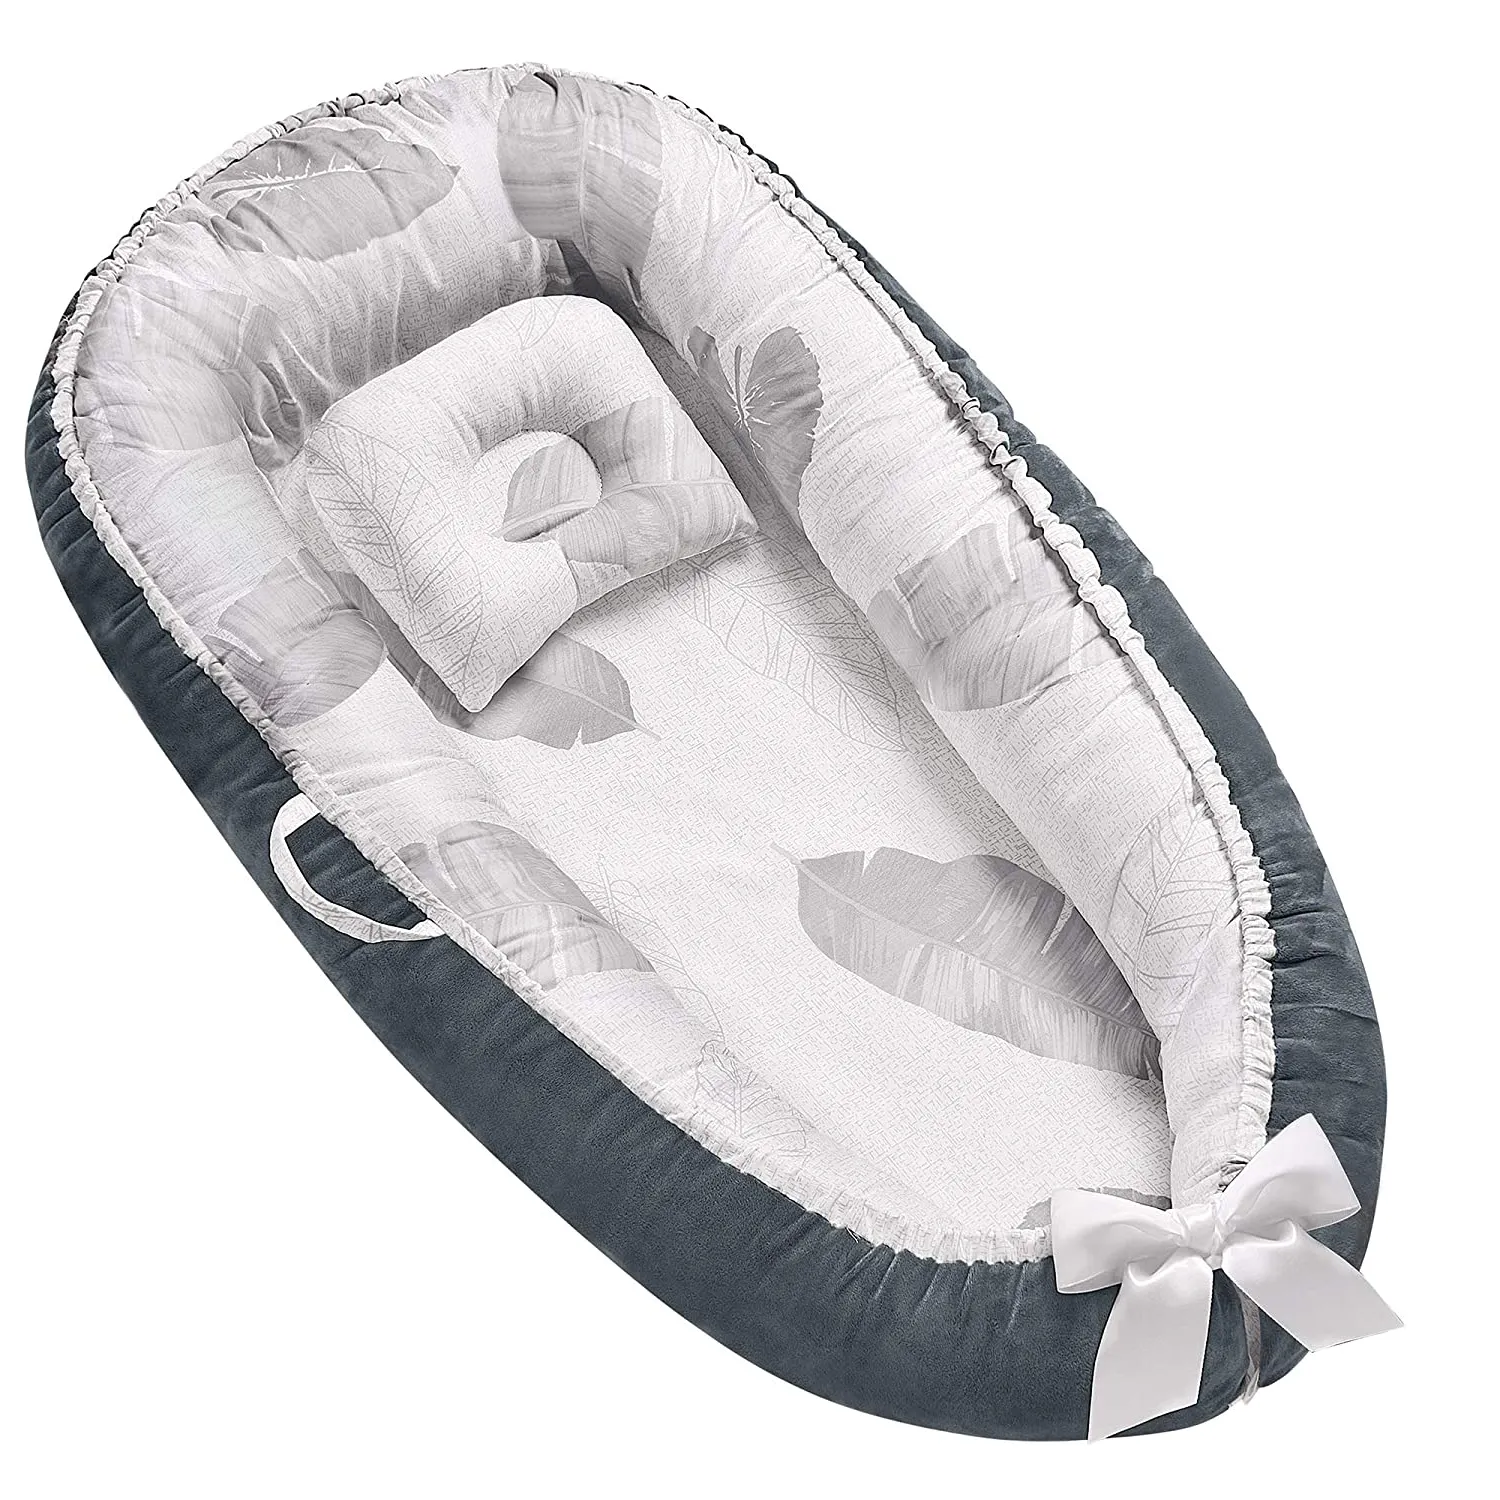 Сертифицированный CPC ASTM CPISA сверхмягкий детский шезлонг с хлопковой подкладкой, складная детская кроватка с наполнителем, переносная детская кроватка-гнездышко